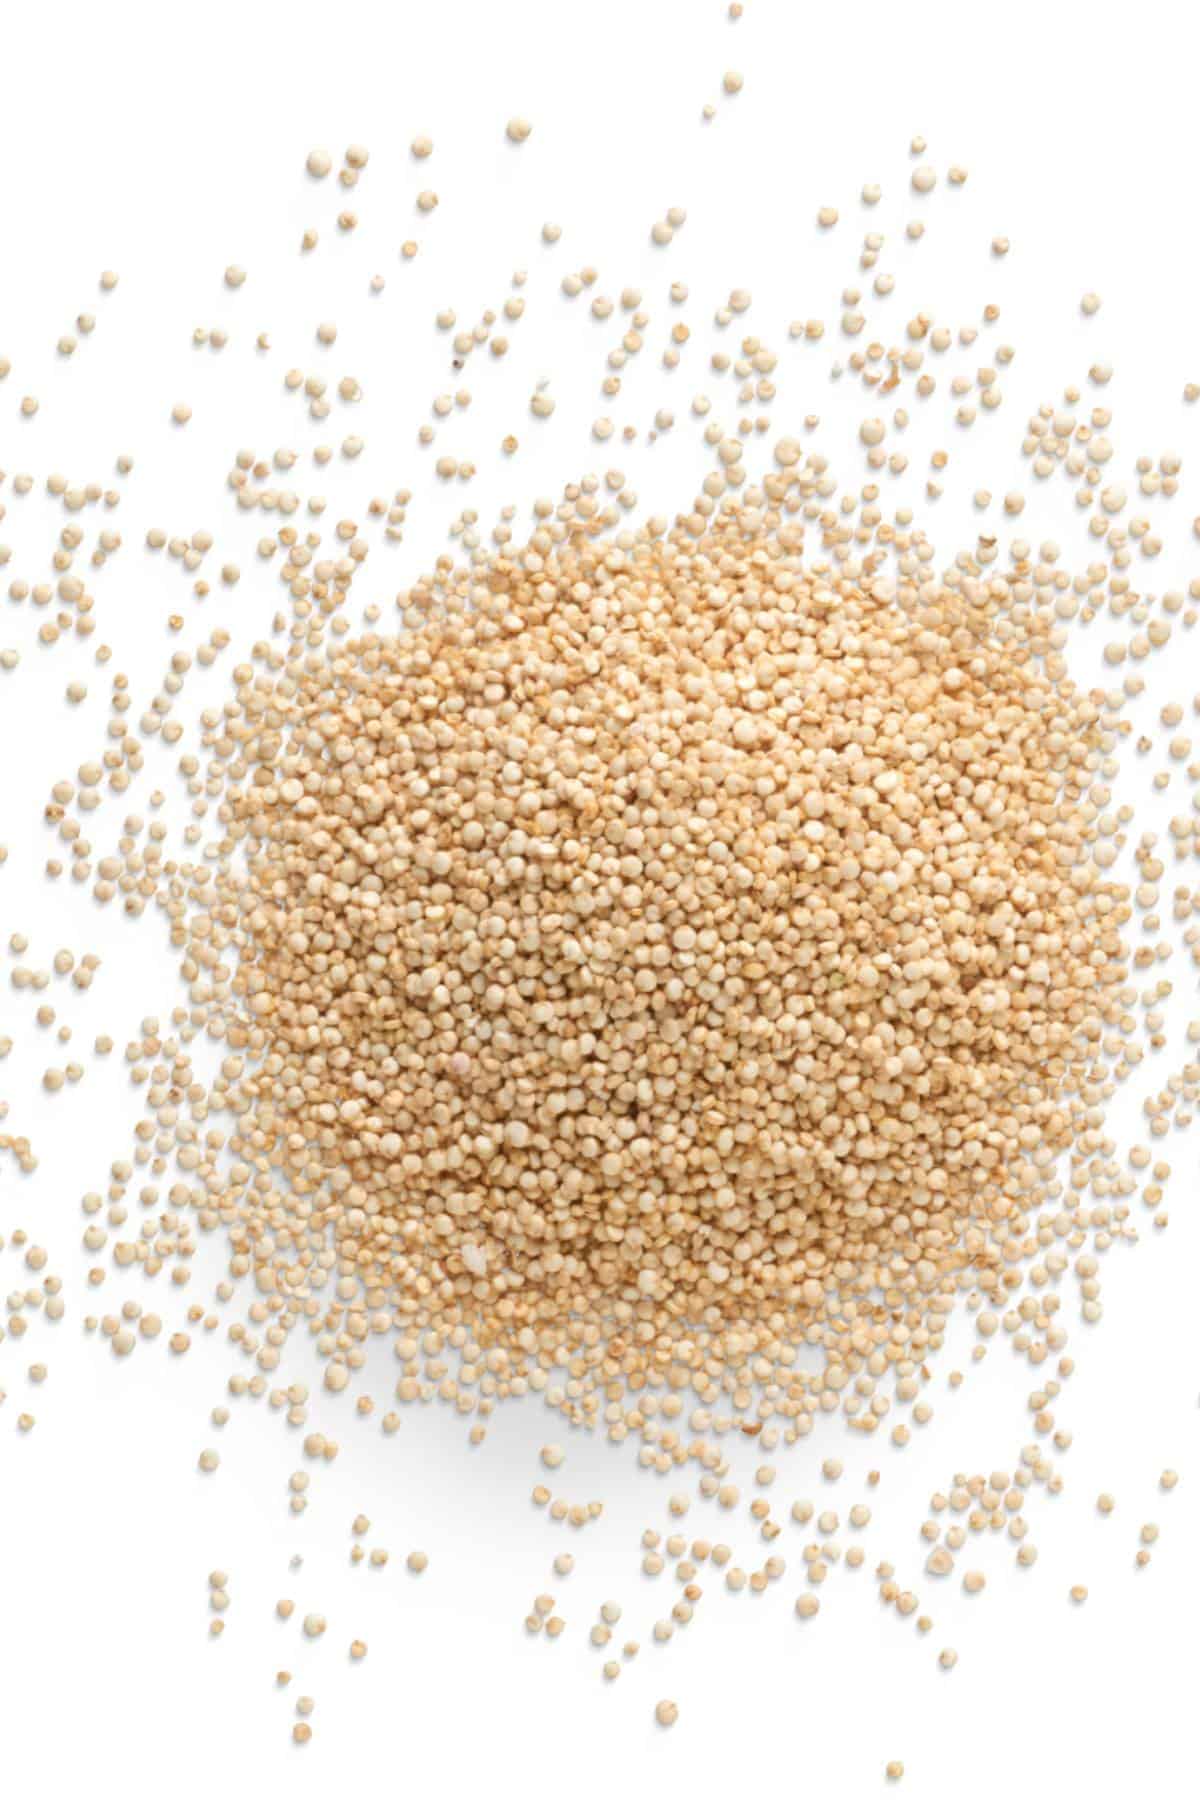 White quinoa spread on a white background
